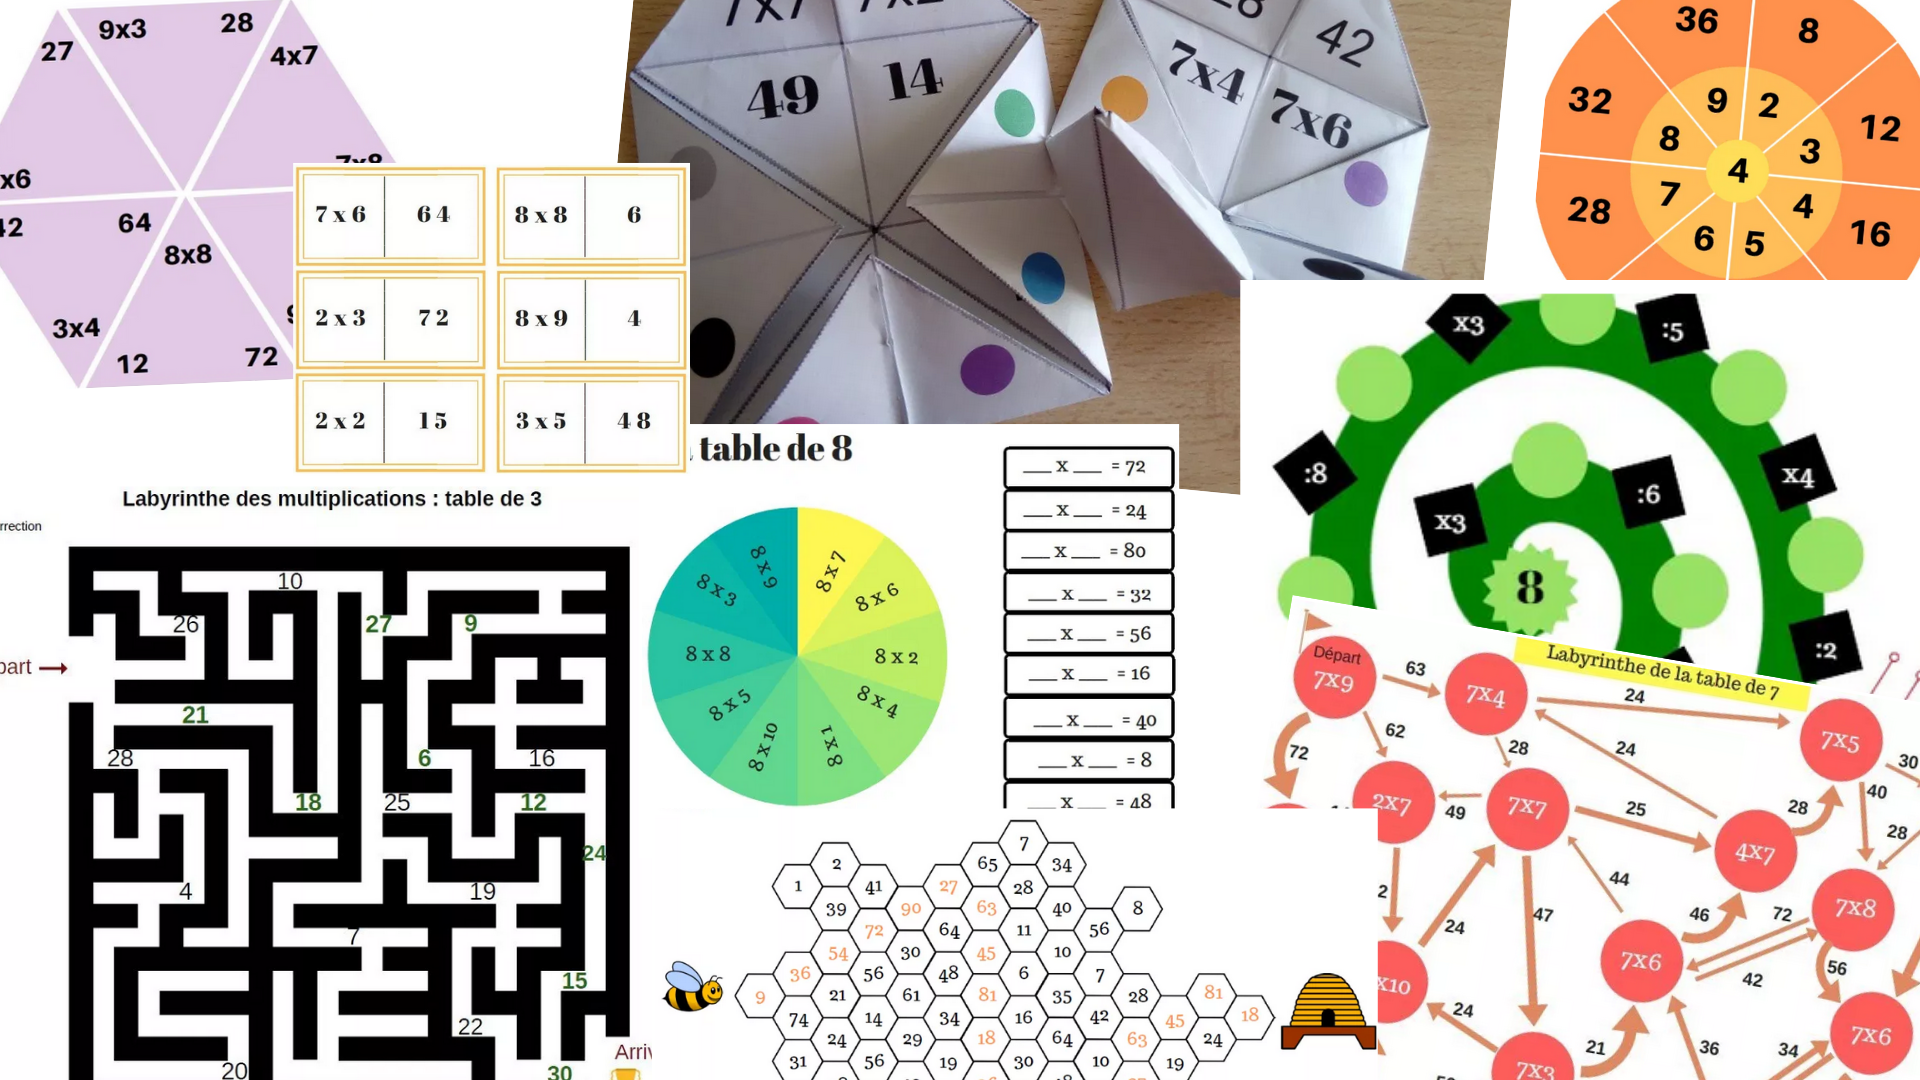 Un jeu de cartes d'association pour réviser les tables de multiplication